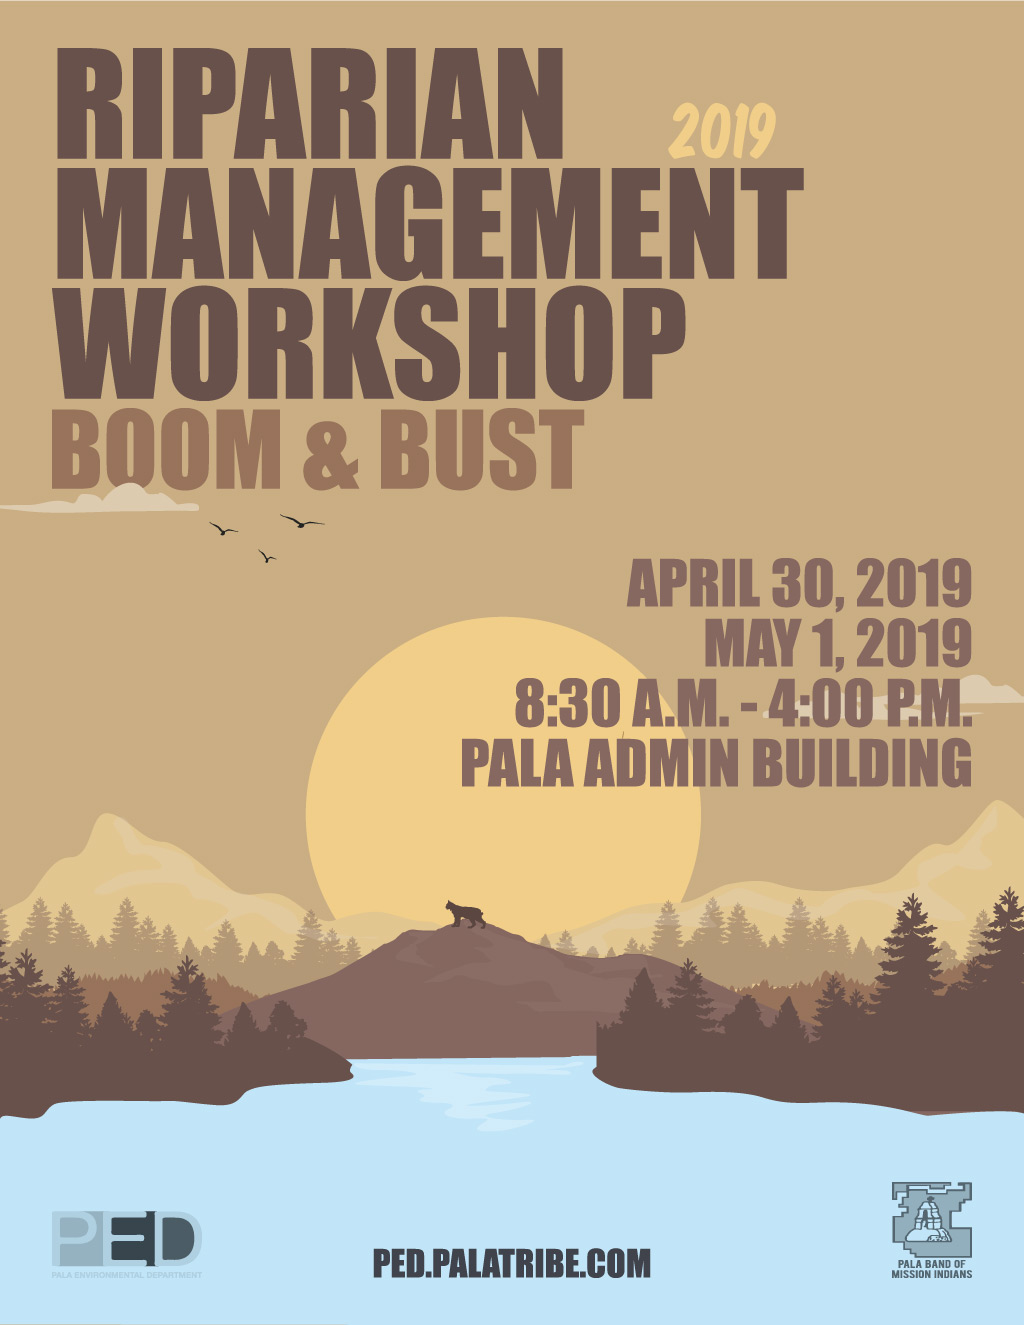 Pala Band California PED Environment Riparian Management Workshop